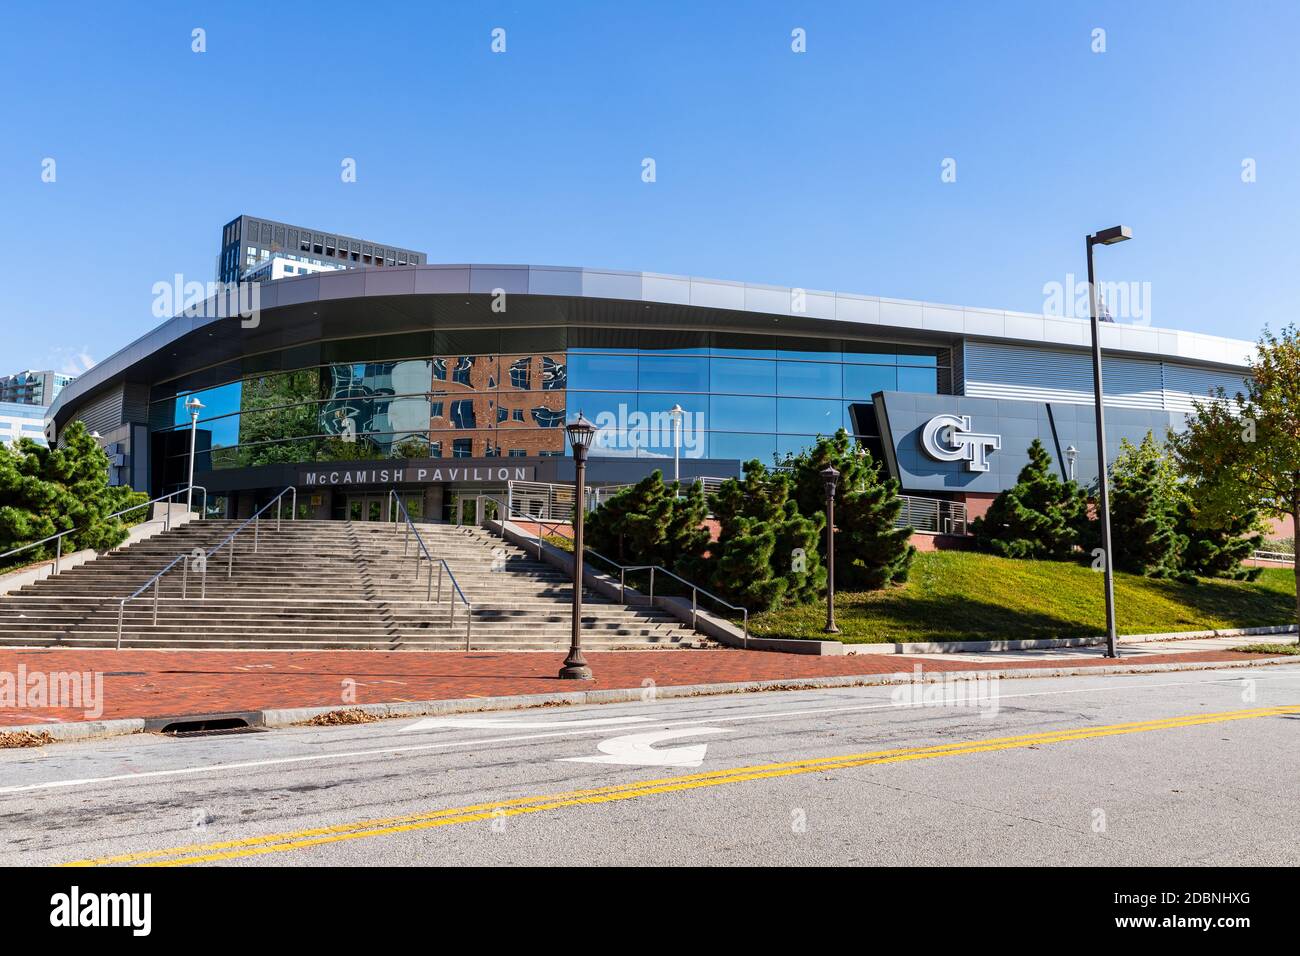 Atlanta, GA / USA - Oktober 29 2020: McCamish Pavilion, genannt Thrillerdome, auf dem Campus von Georgia Tech Stockfoto